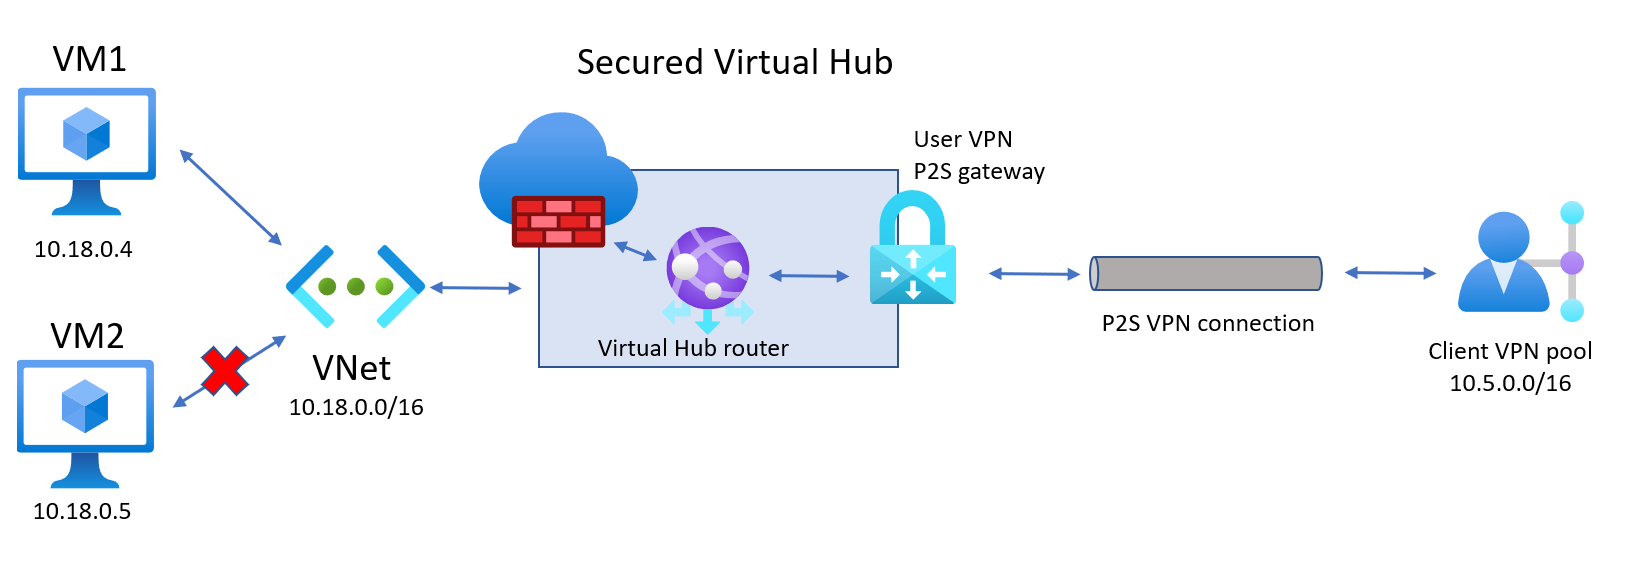 Abbildung: Geschützter virtueller Hub